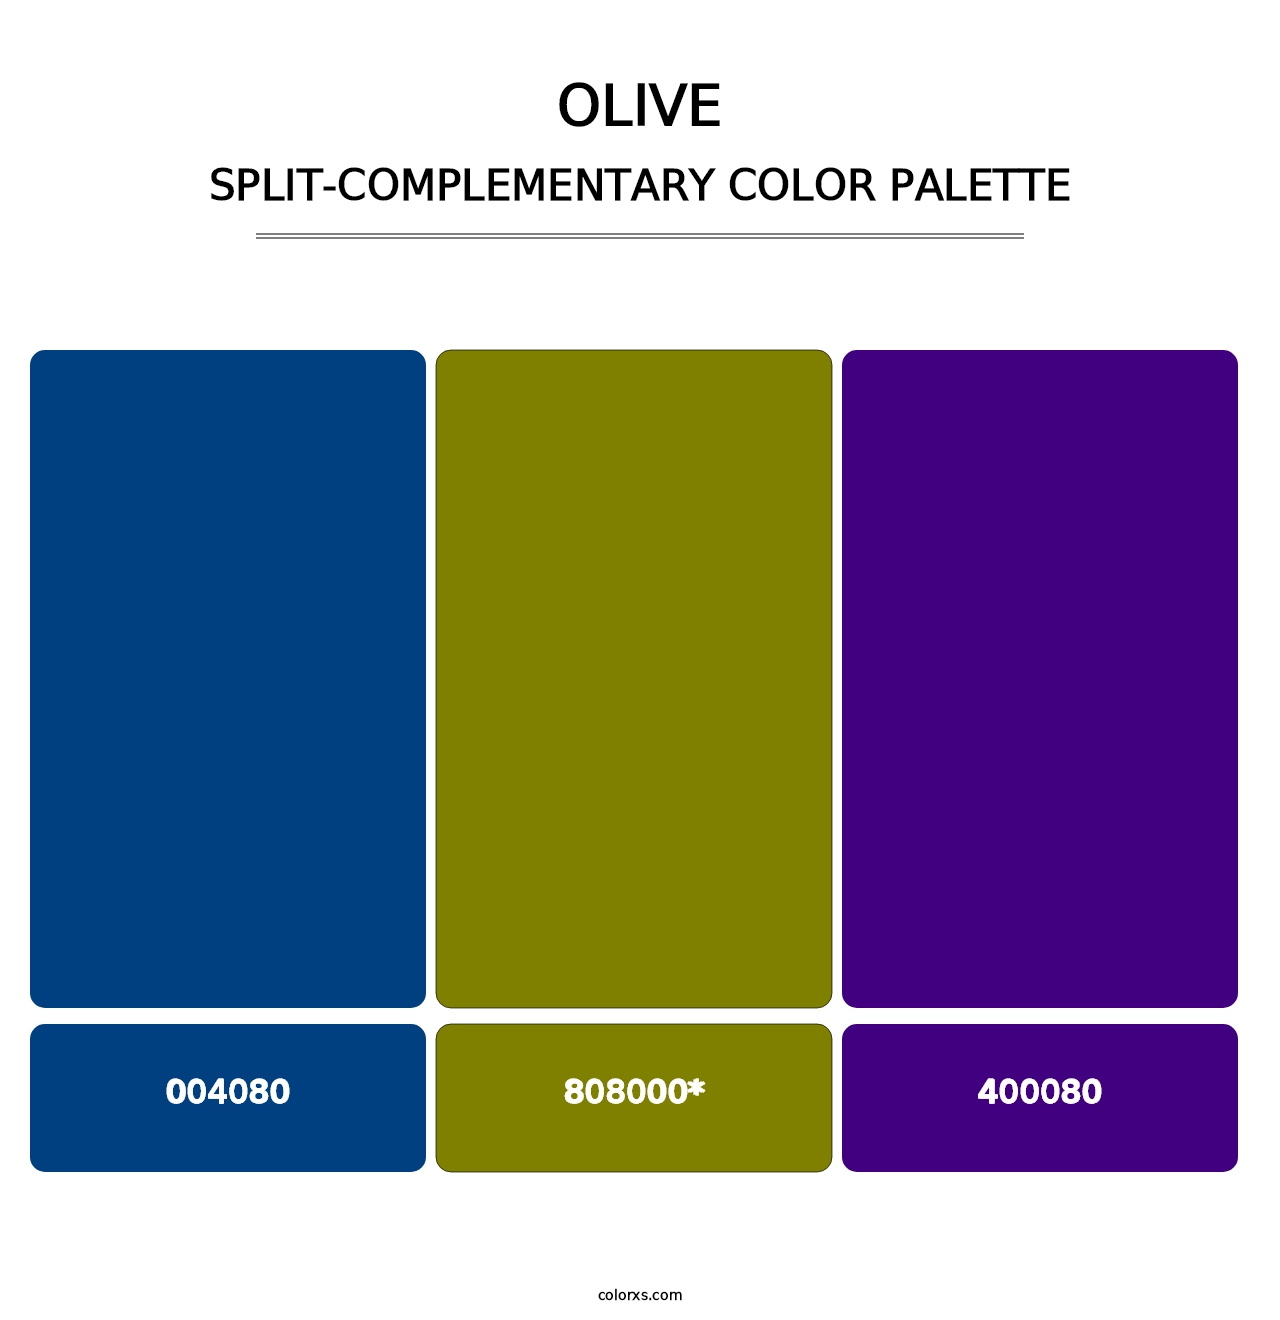 Olive - Split-Complementary Color Palette